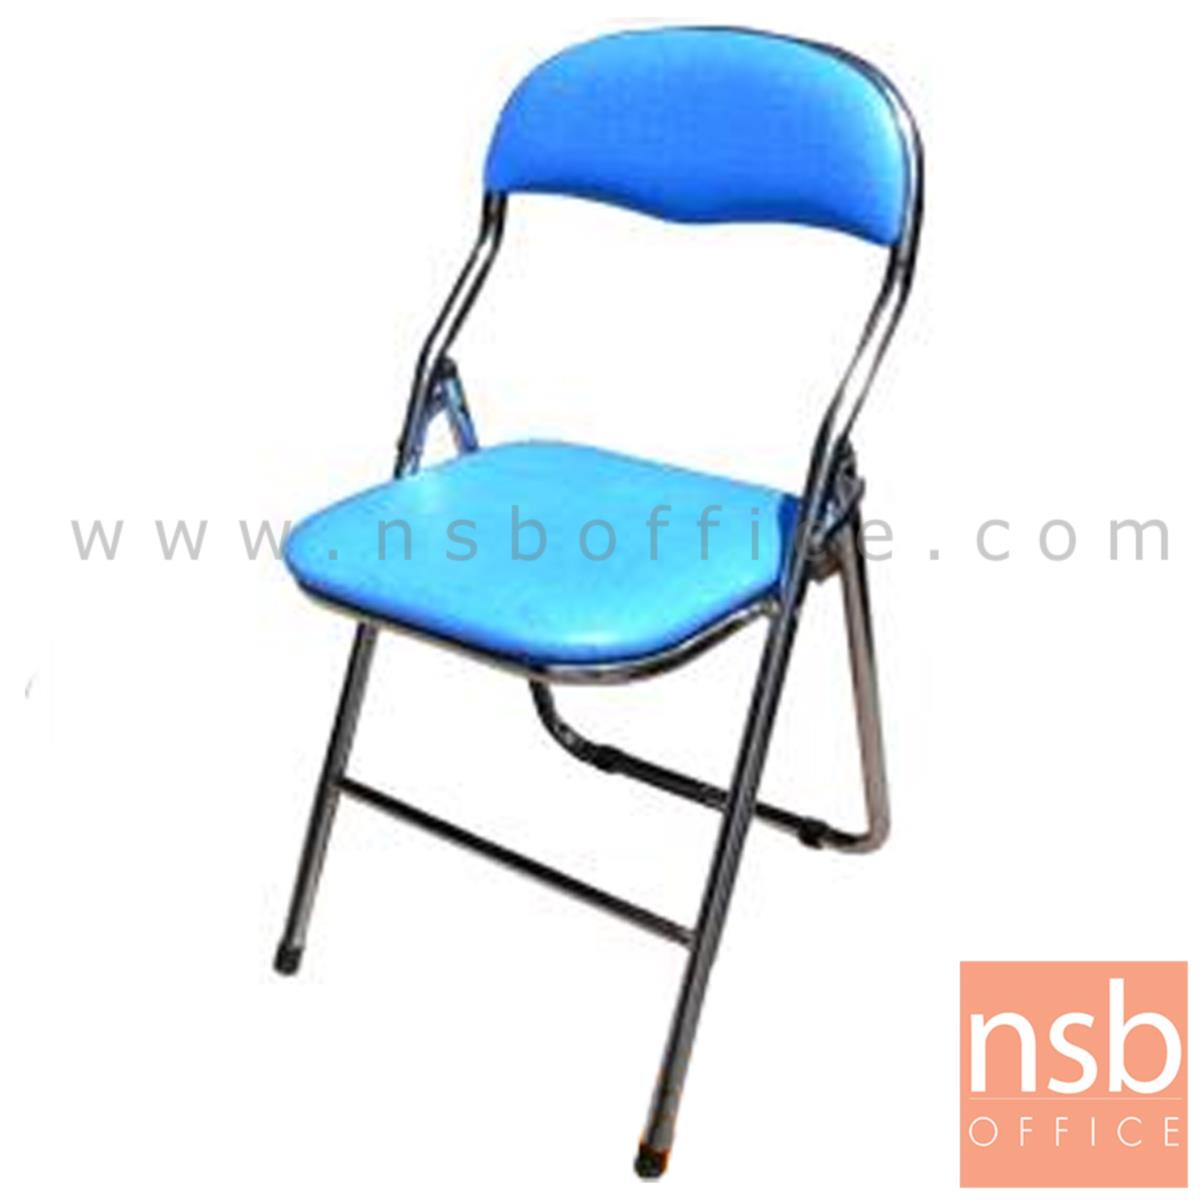 B09A114:เก้าอี้พับที่นั่งหุ้มเบาะหนัง รุ่น BRANDY ขาเหล็กชุบโครเมี่ยม